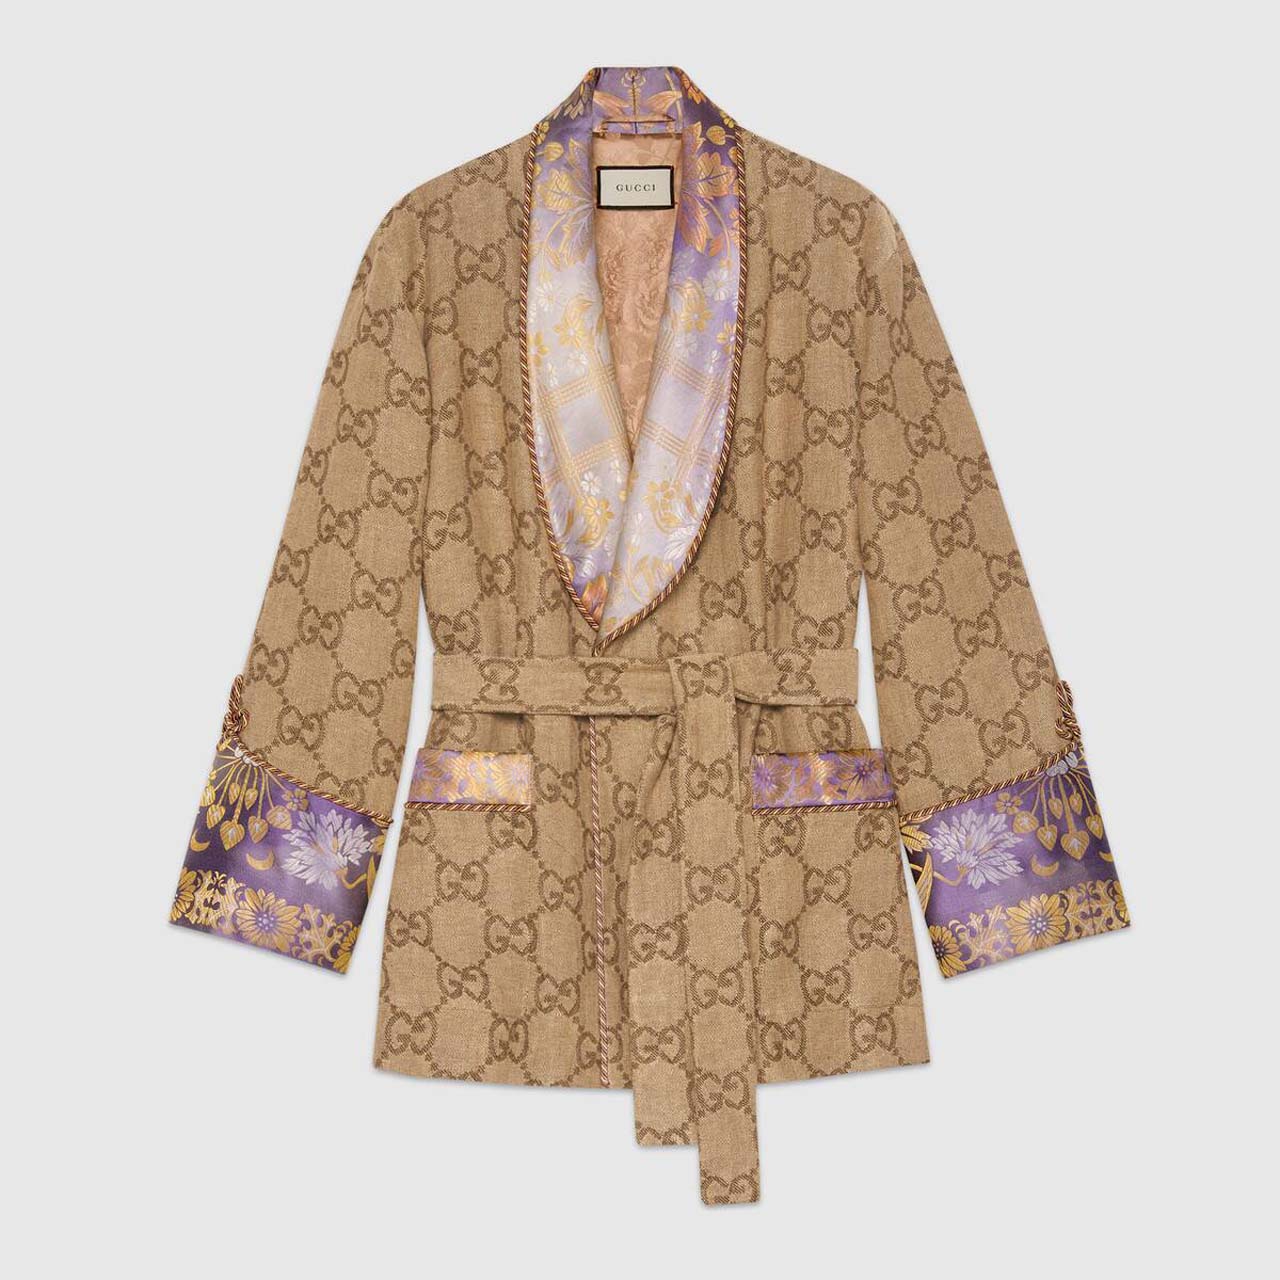 Gucci Linen Jacket $5,700